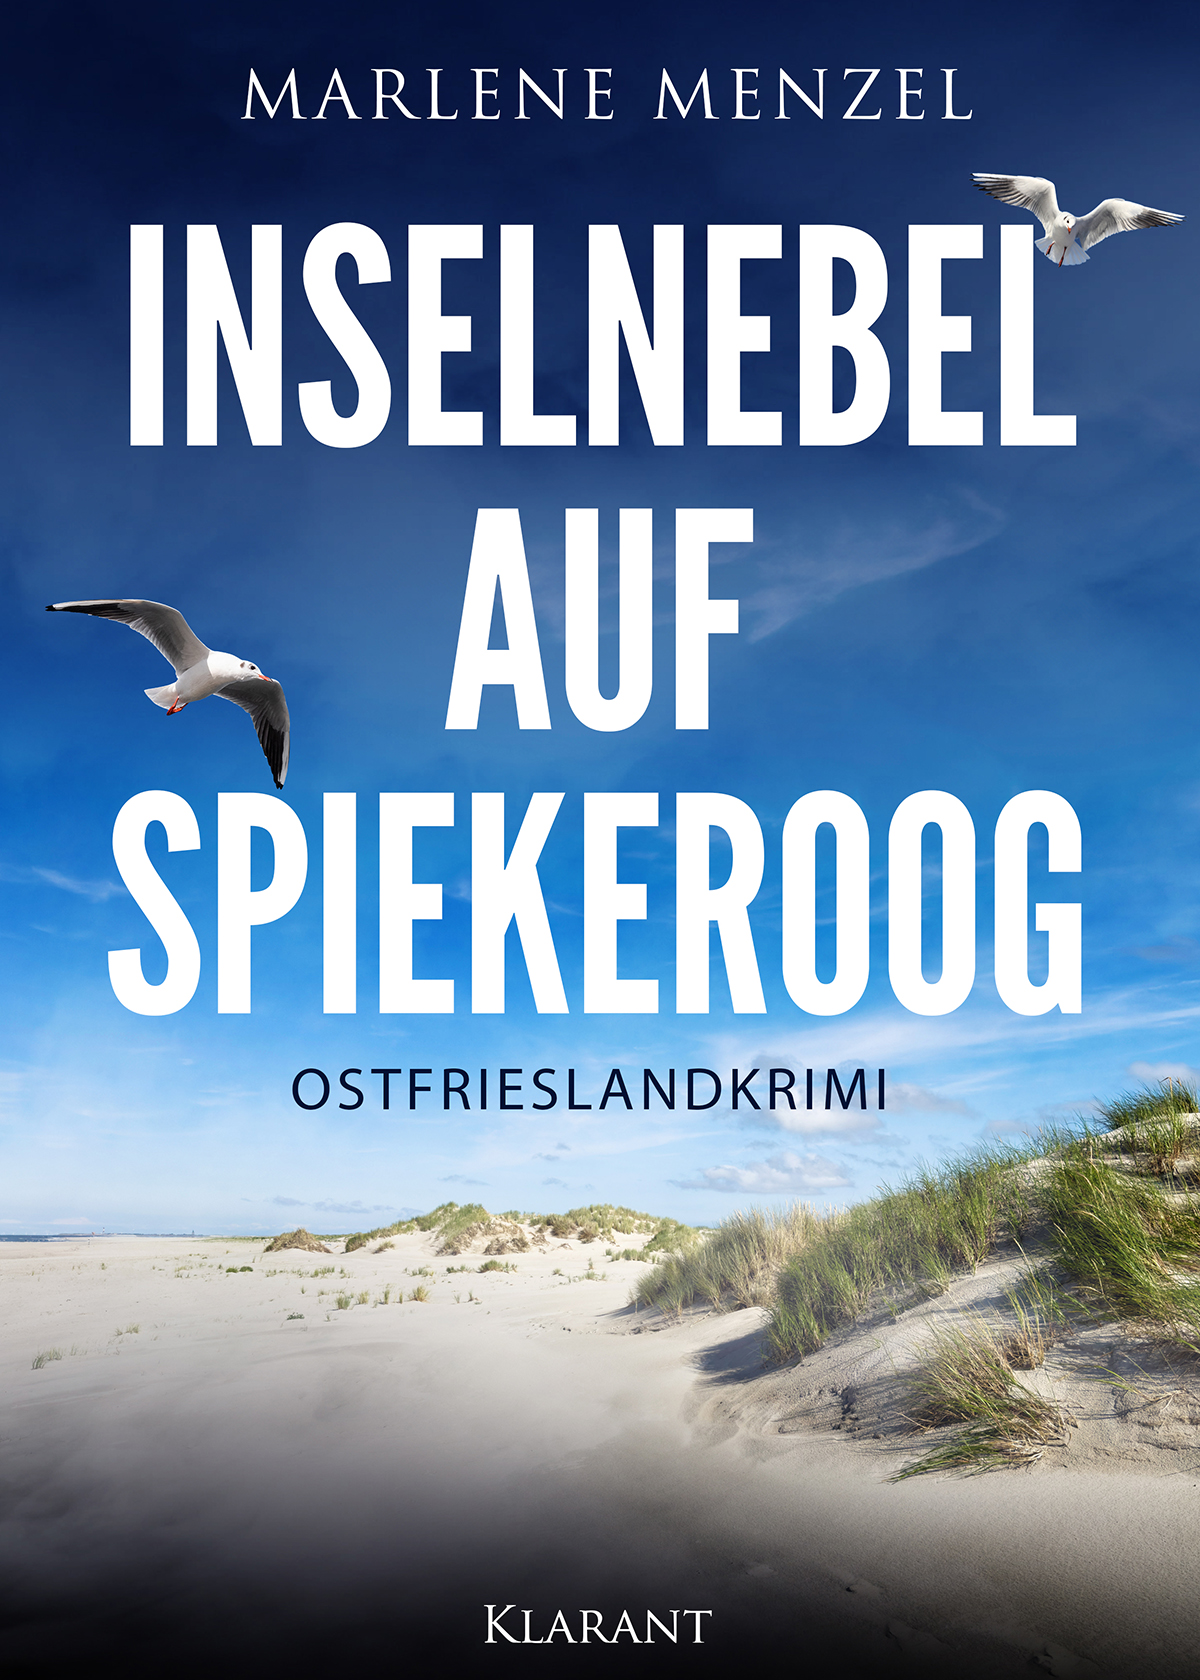 Ostfrieslandkrimi "Inselnebel auf Spiekeroog" von Marlene Menzel (Klarant Verlag